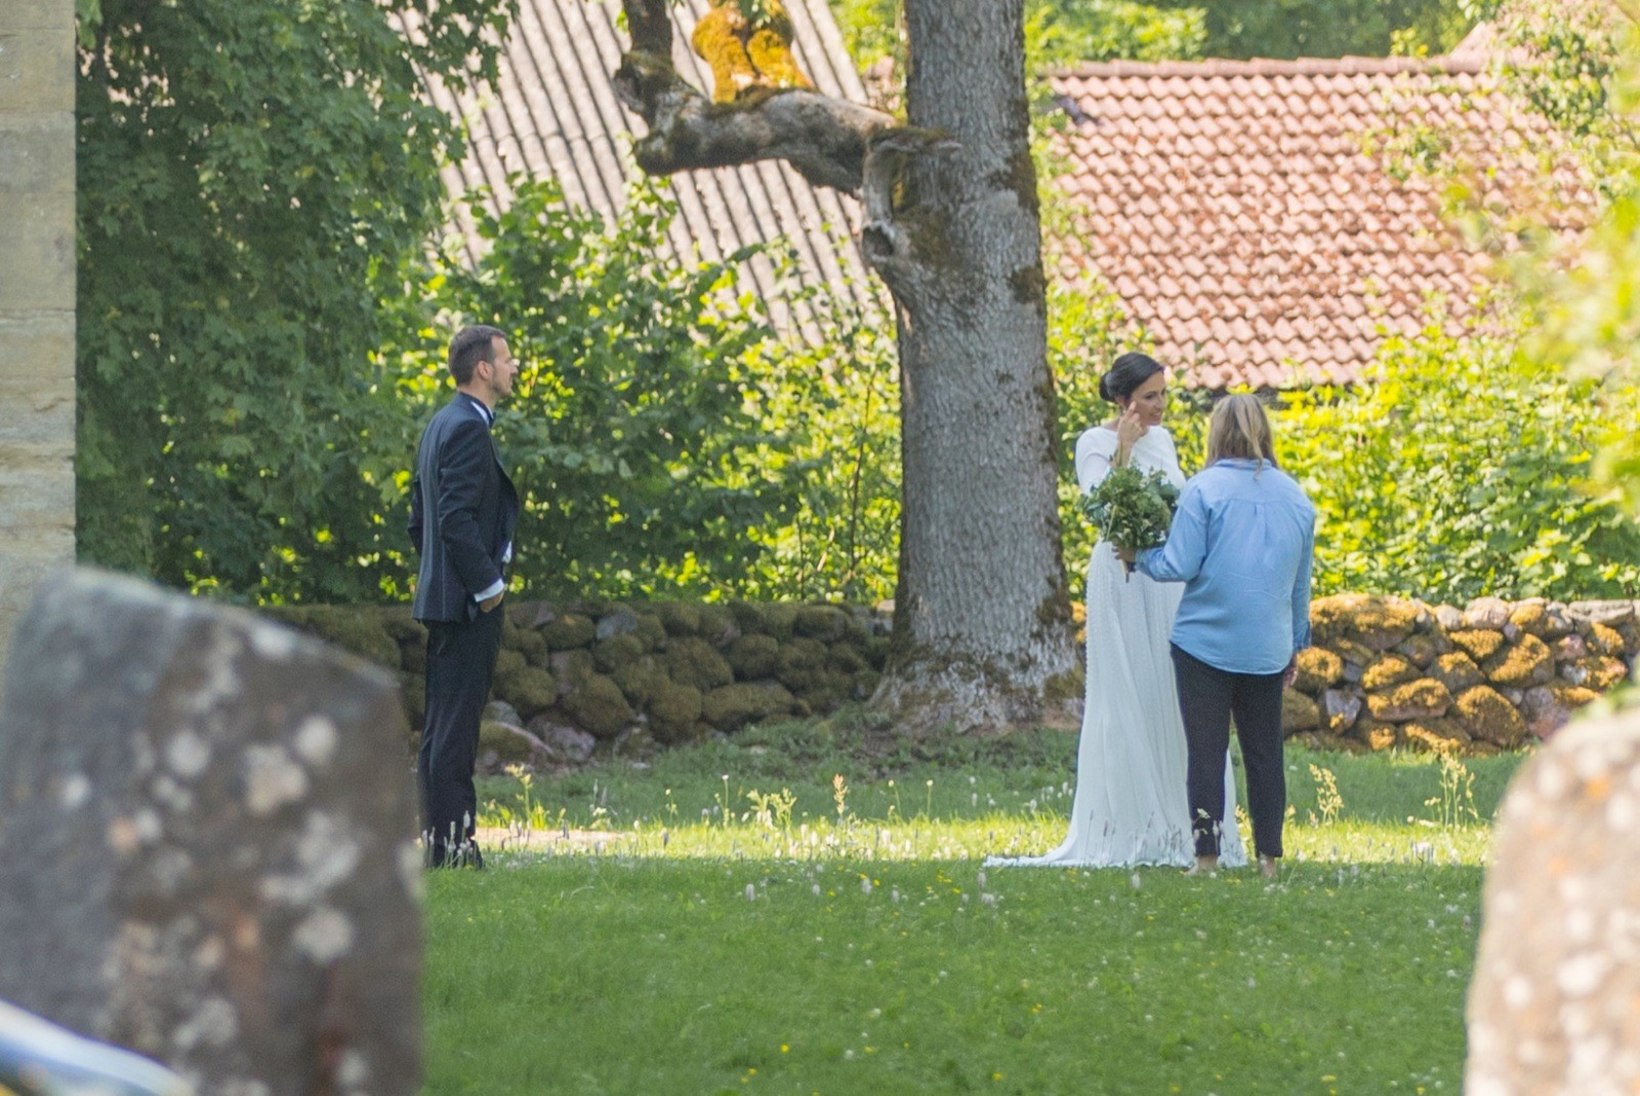 FOTOD | Transferwise'i asutaja Taavet Hinrikus abiellus Muhu saarel oma armsamaga